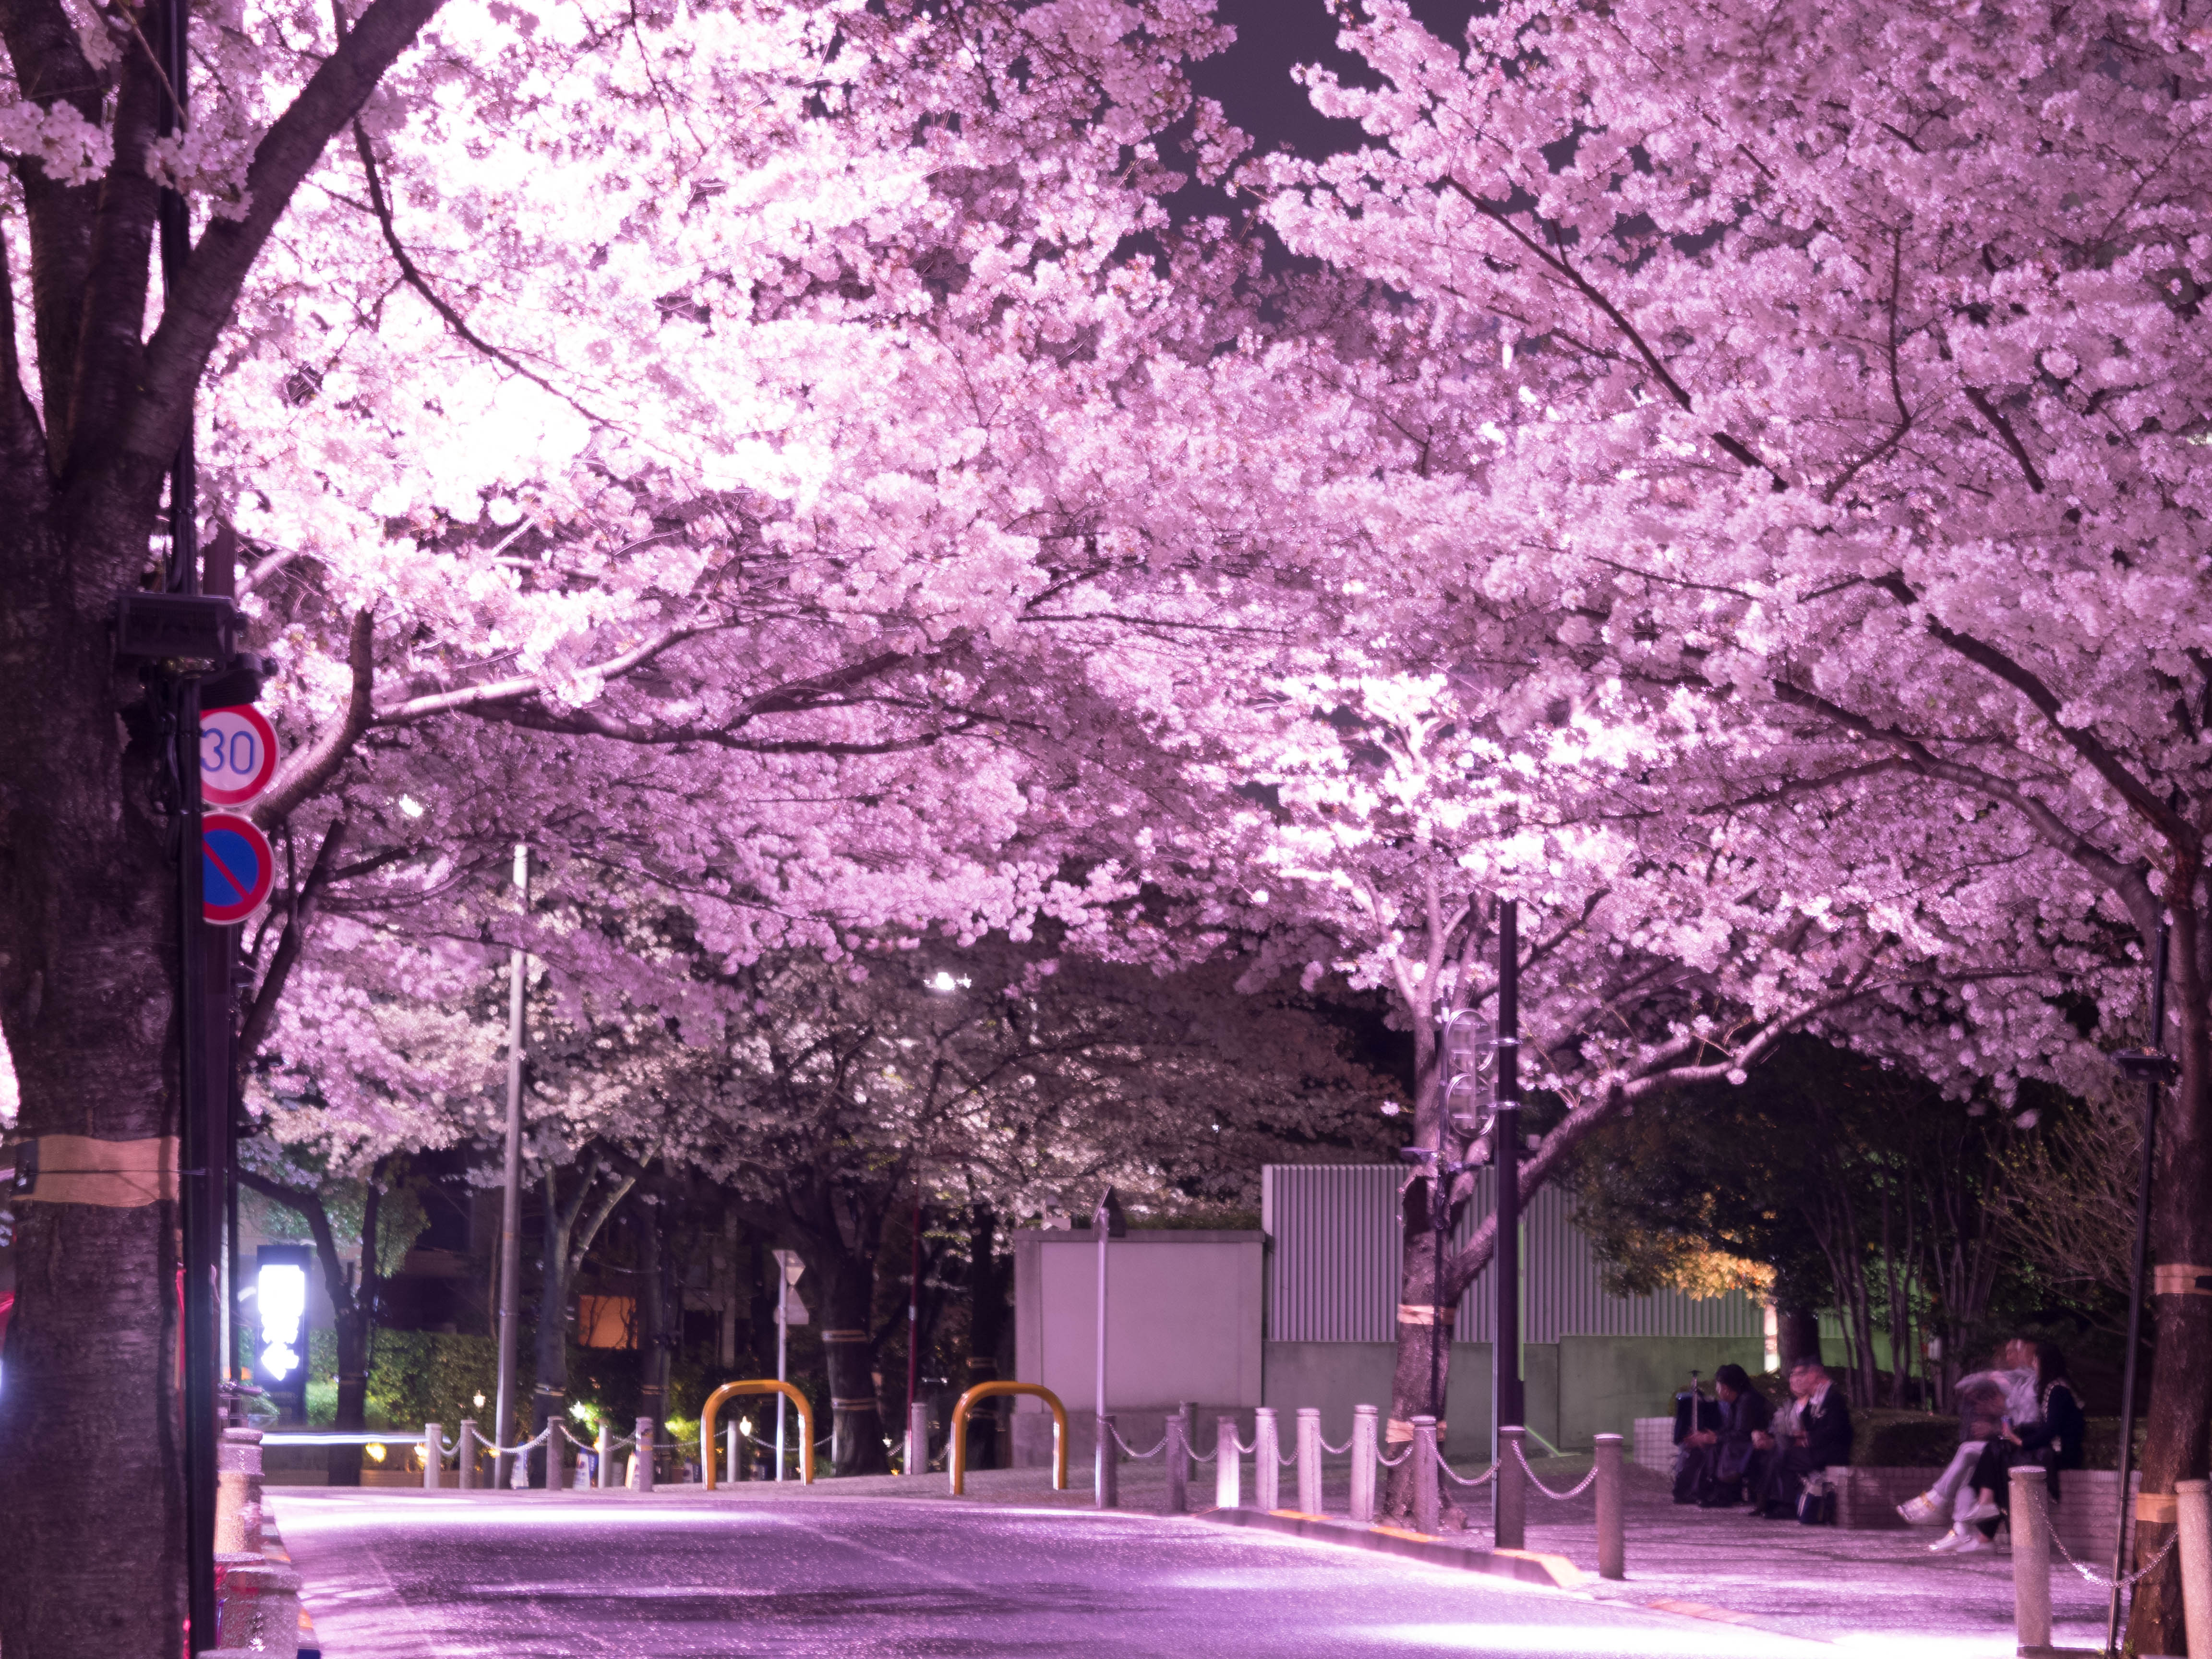 画像をダウンロード Pc 壁紙 夜桜 ただ素晴らしい花